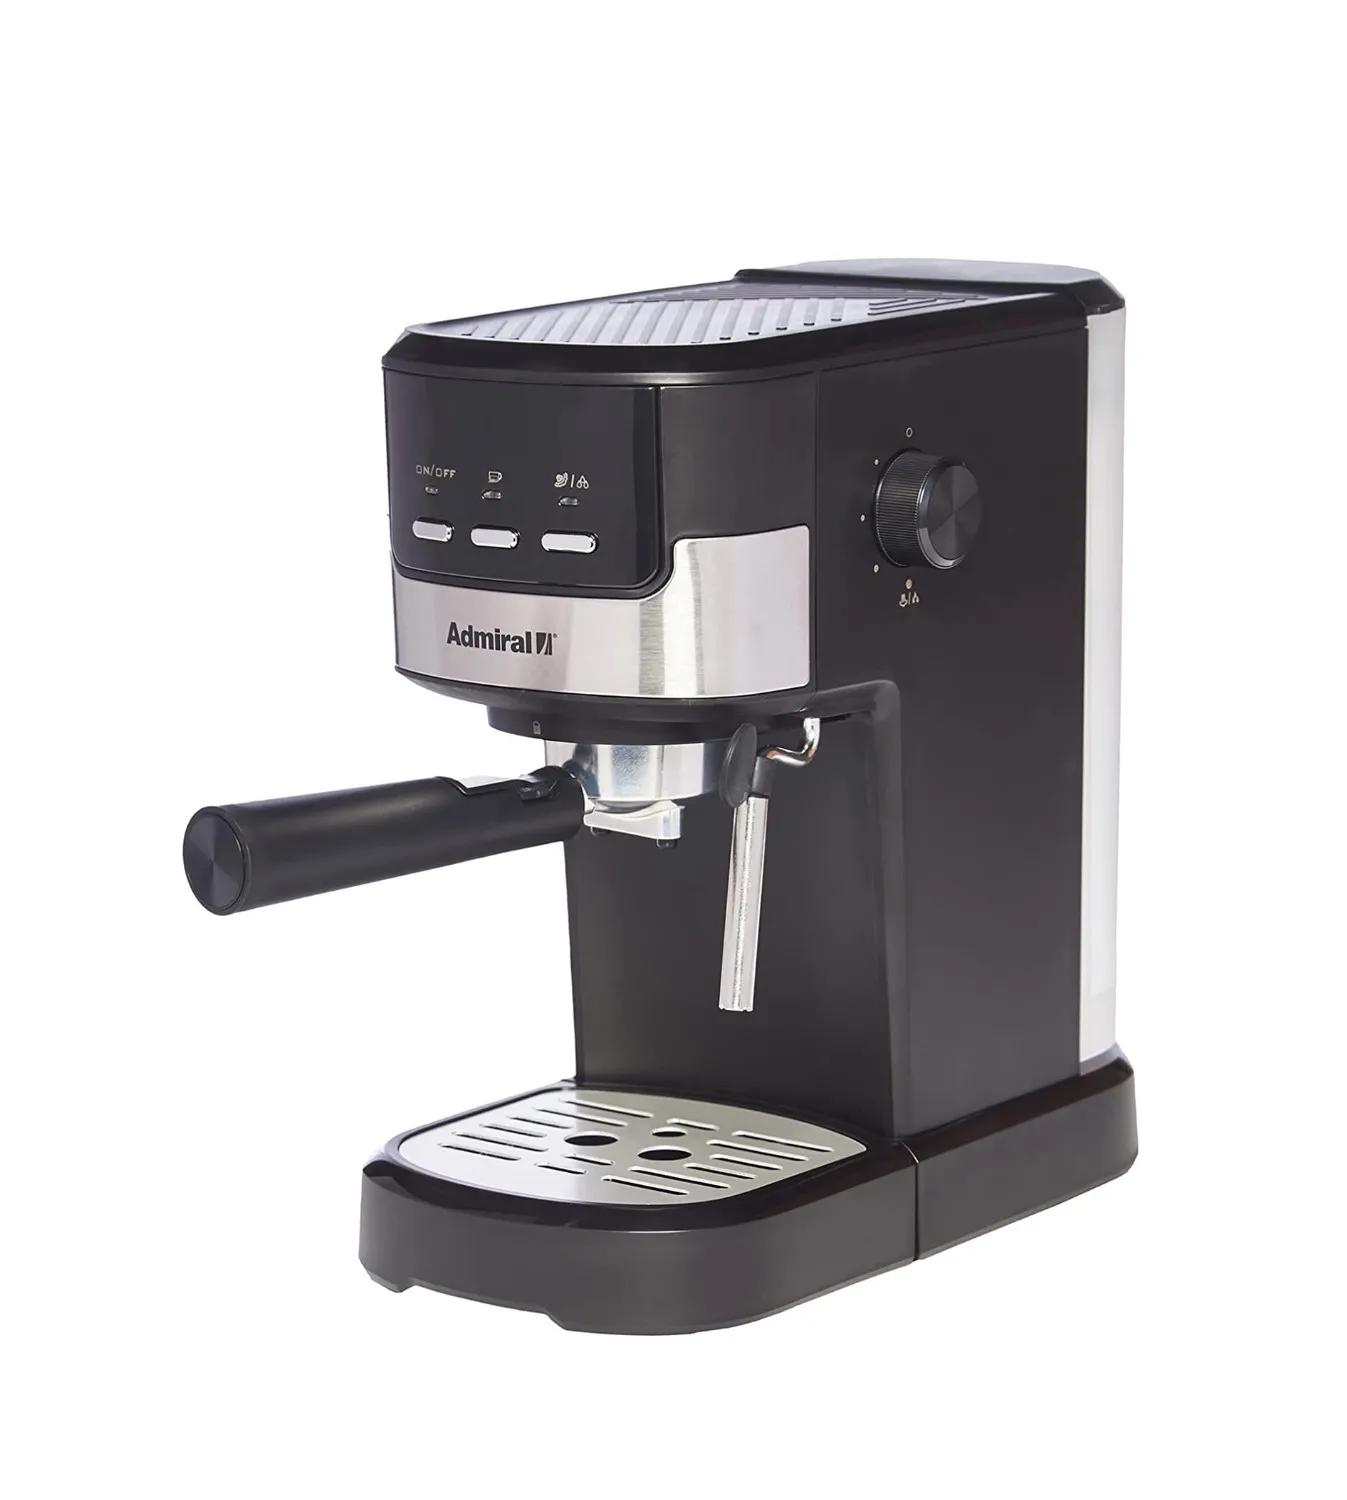 Admiral Espresso Coffee Maker, Black Model - ADCM8502